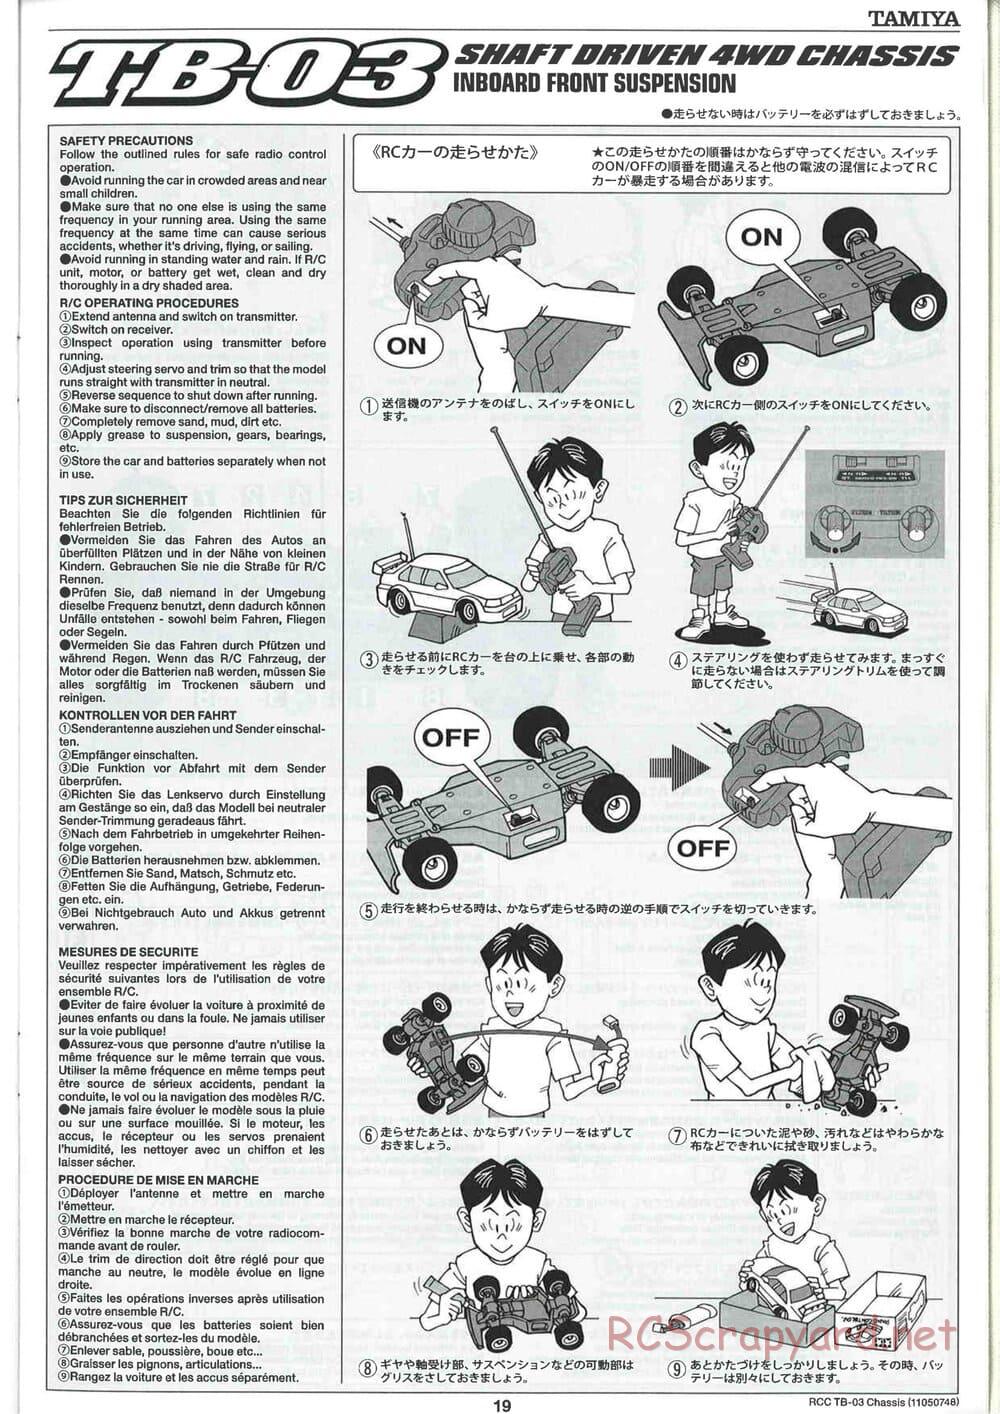 Tamiya - TB-03 Chassis - Manual - Page 19